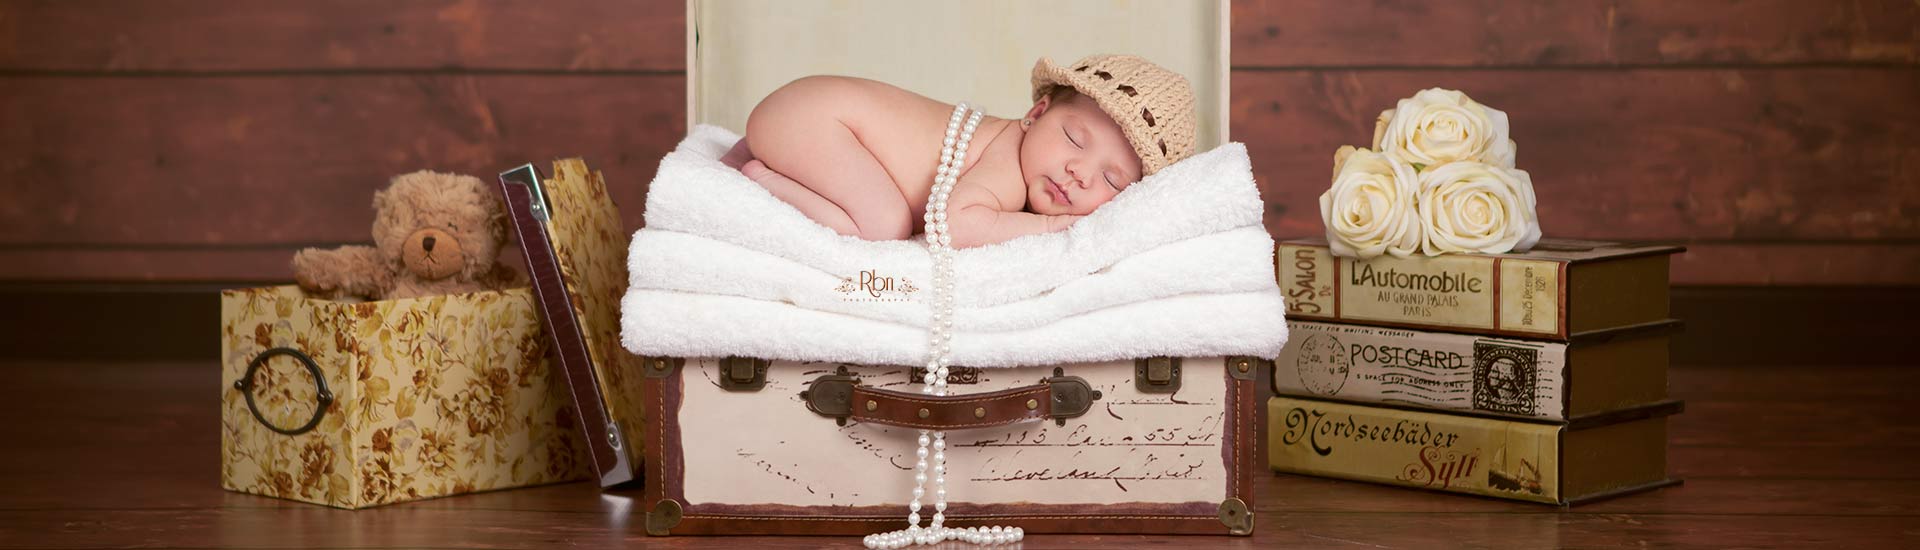 fotografo bebes-fotos estudio bebes-book bebe-fotografos bebes-fotografia de bebes madrid